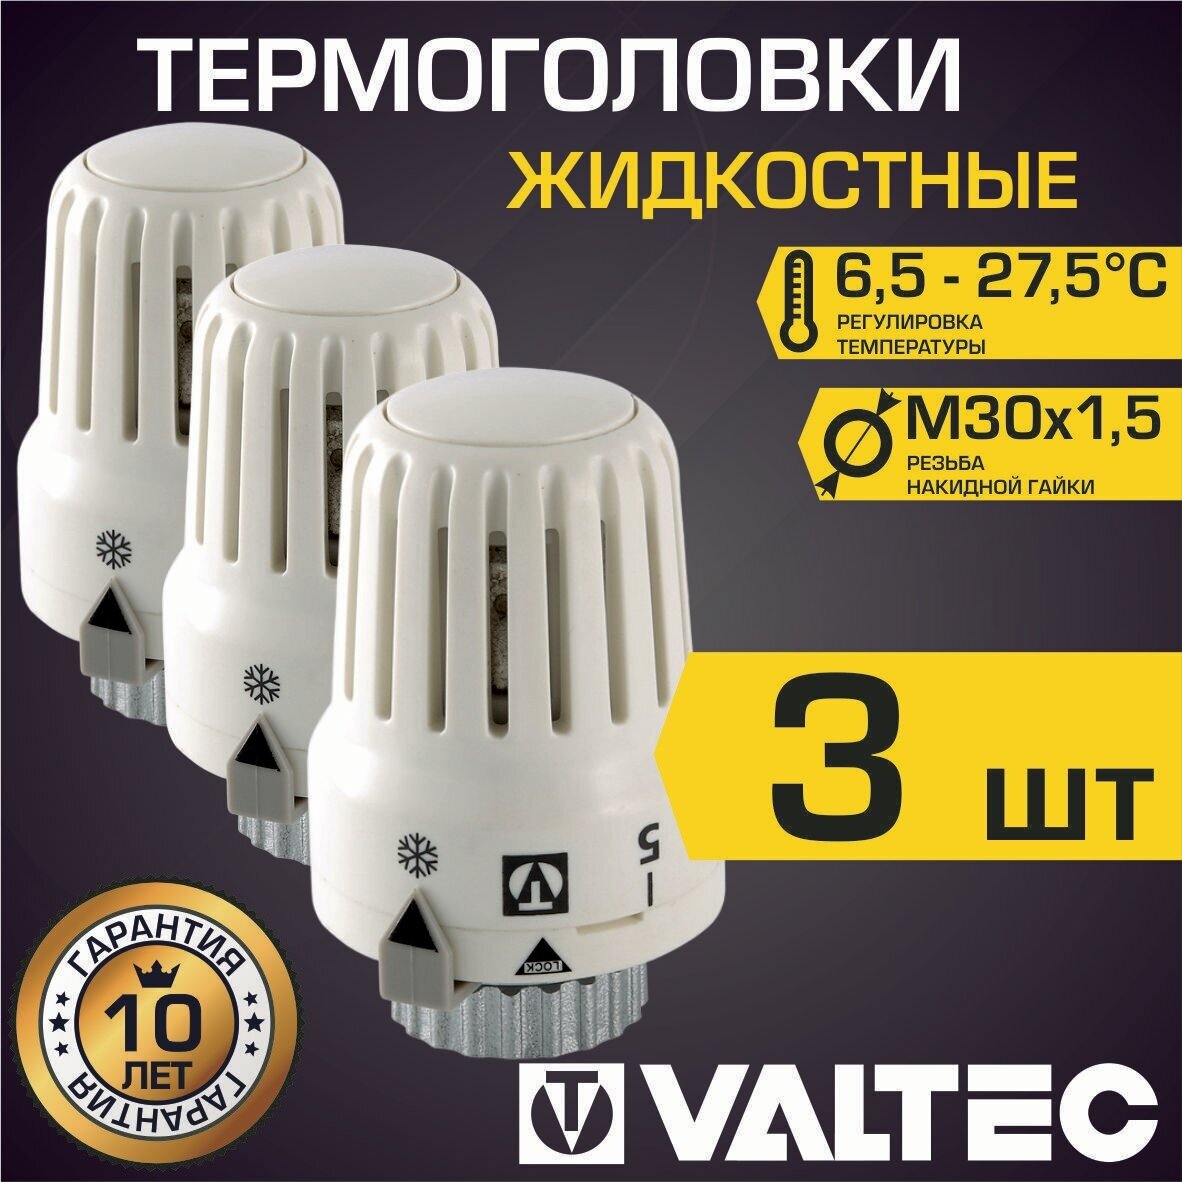 Термоголовка для радиатора М30x1,5 жидкостная VALTEC, 3 шт / Термостатическая головка на батарею отопления, арт. VT.3000.0.0